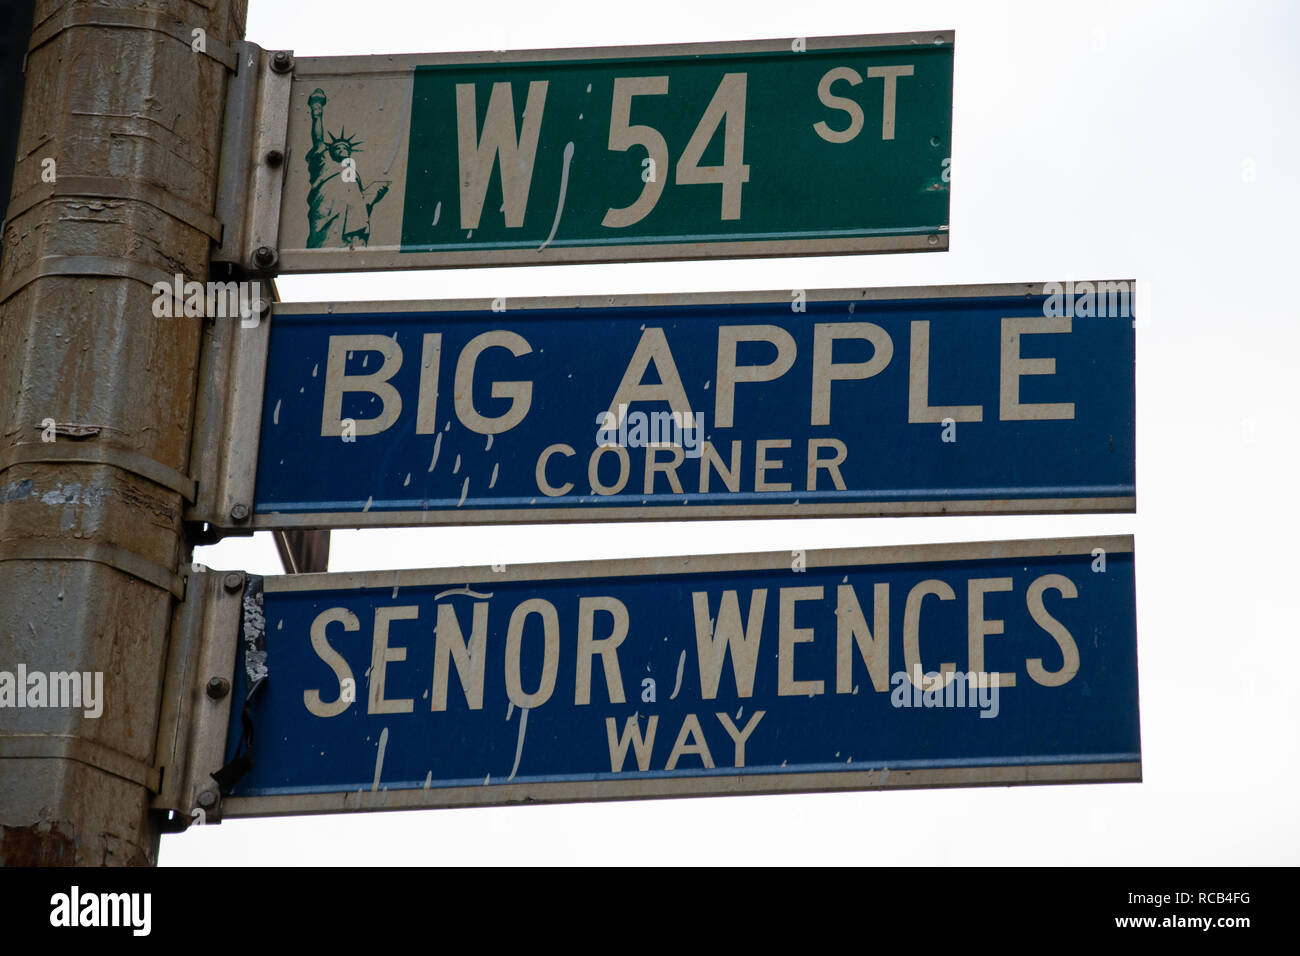 La Ciudad de Nueva York, Estados Unidos - 17 de noviembre 2018: Las señales de la carretera para el West 54th, Big Apple Corner y Senor Wences camino cuelgan de una farola en una Boradway Foto de stock